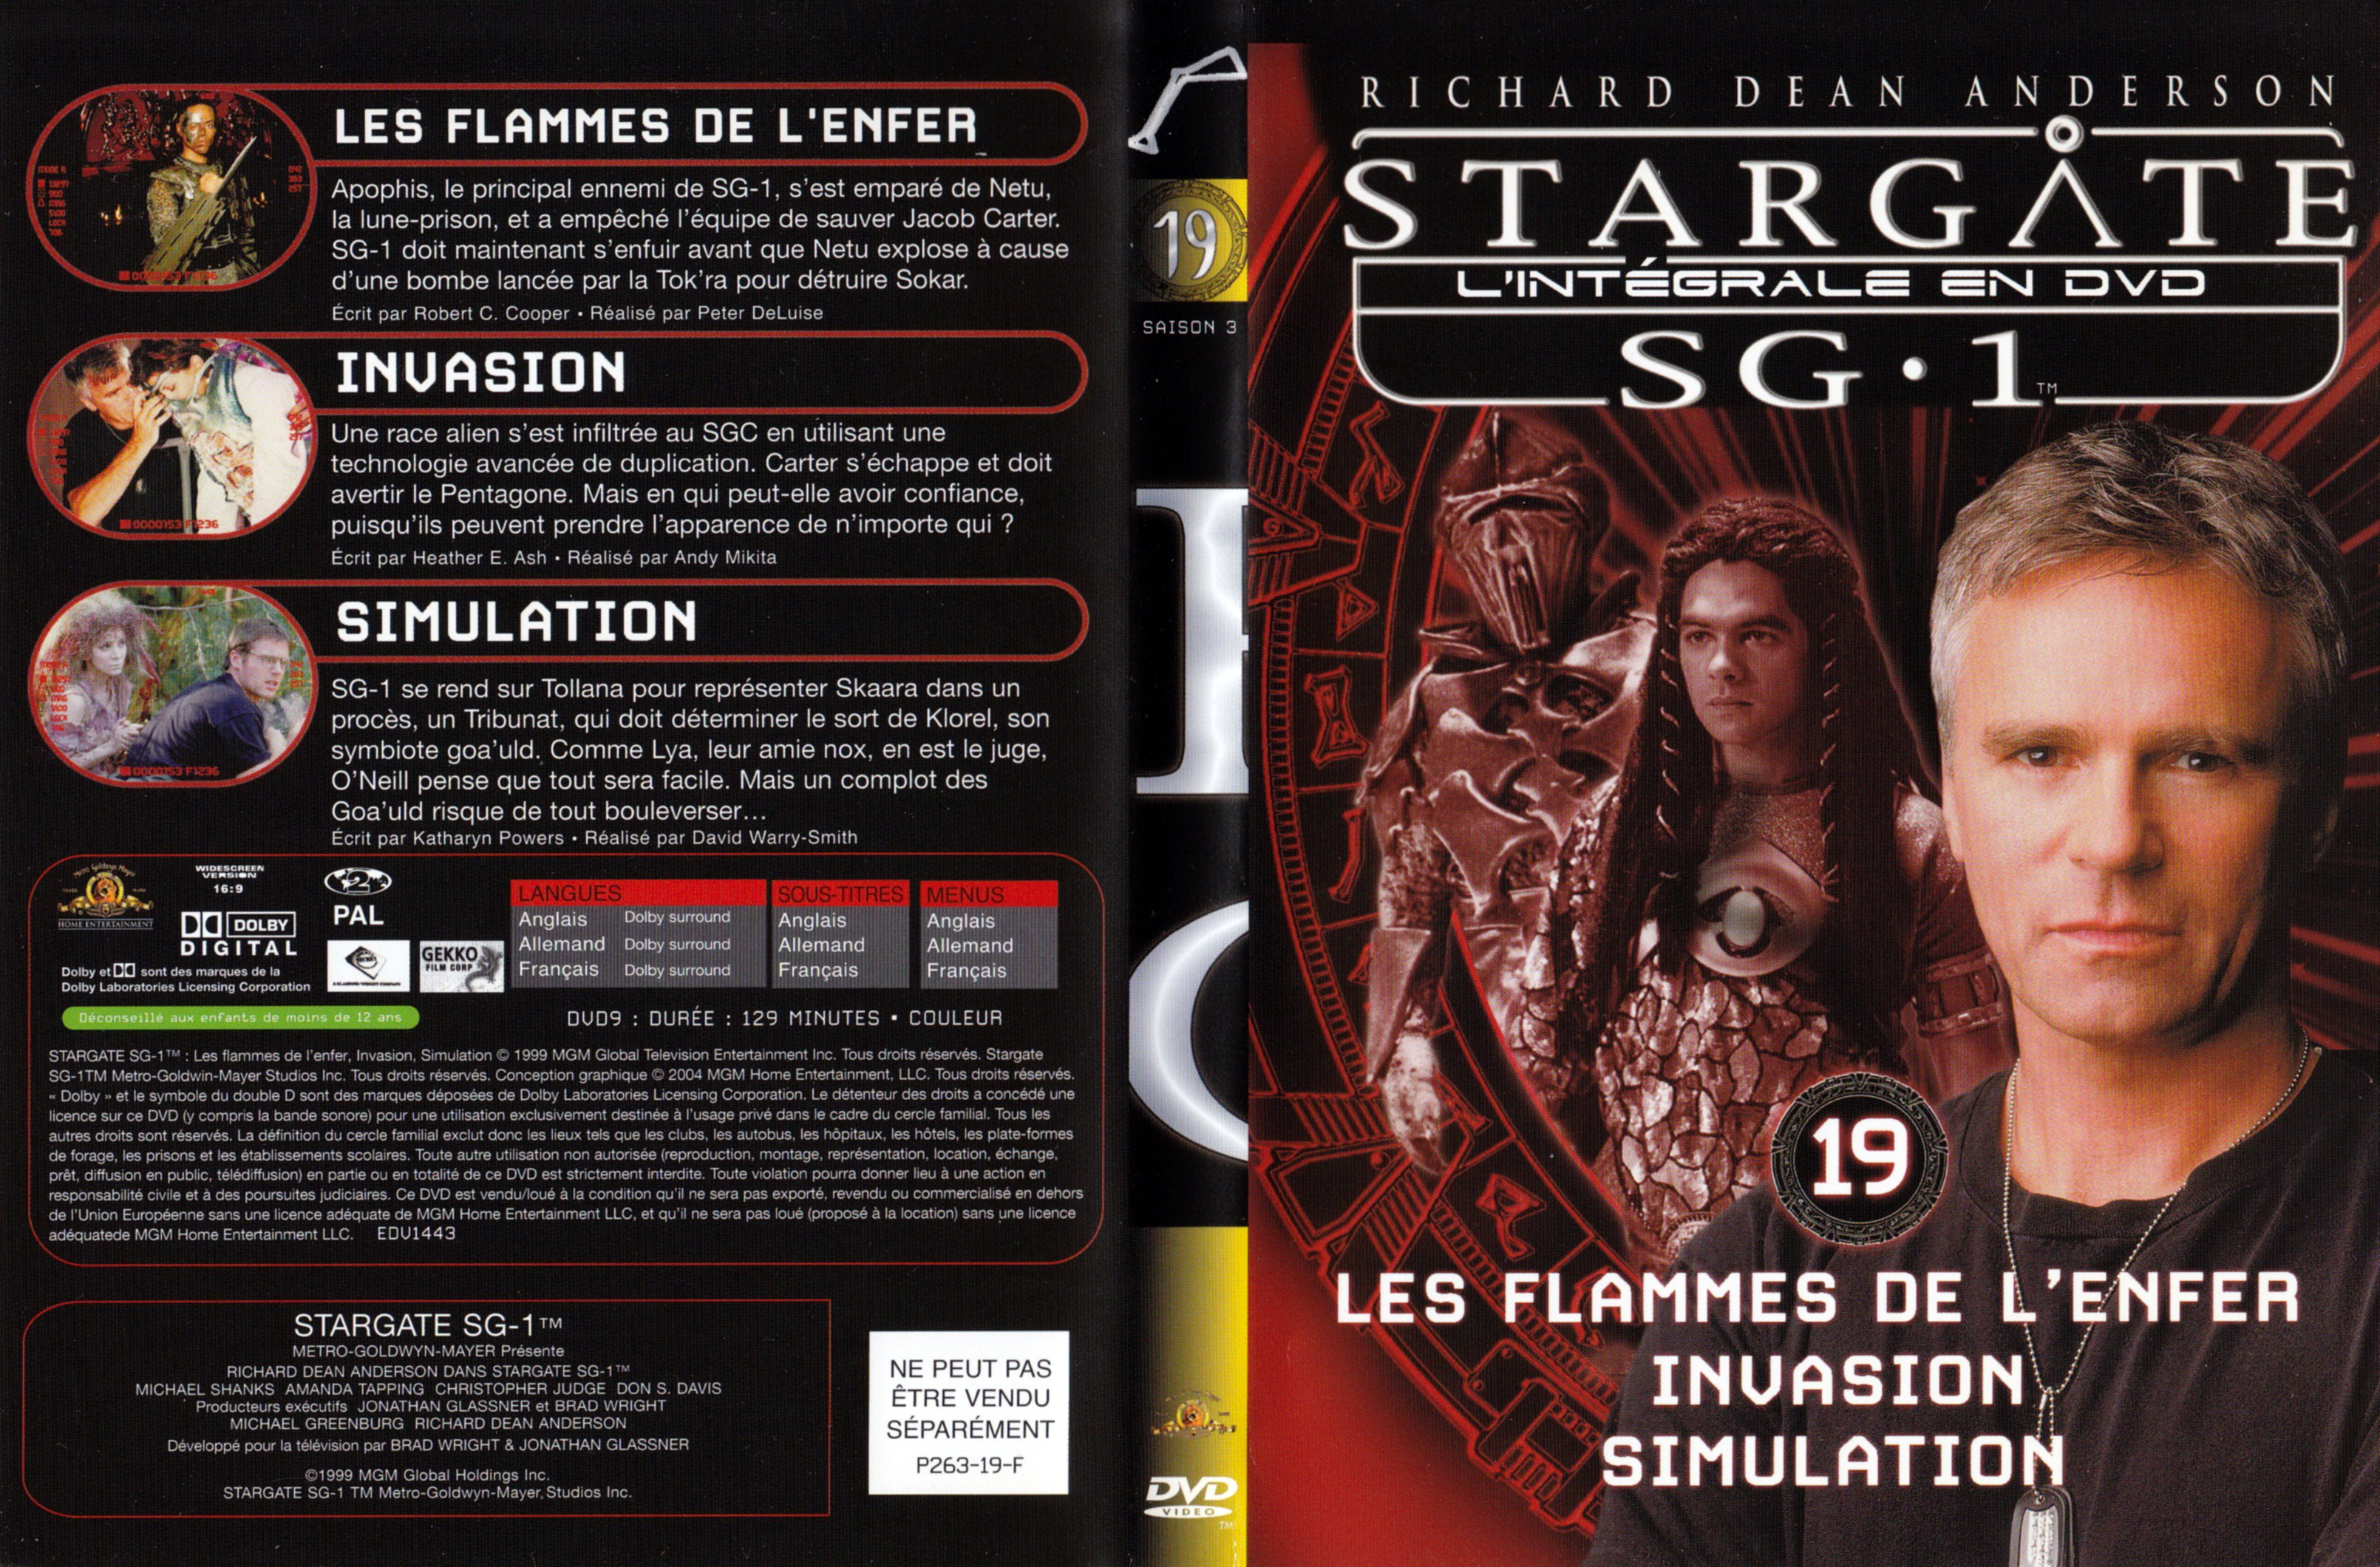 Jaquette DVD Stargate SG1 Intgrale Saison 3 vol 19